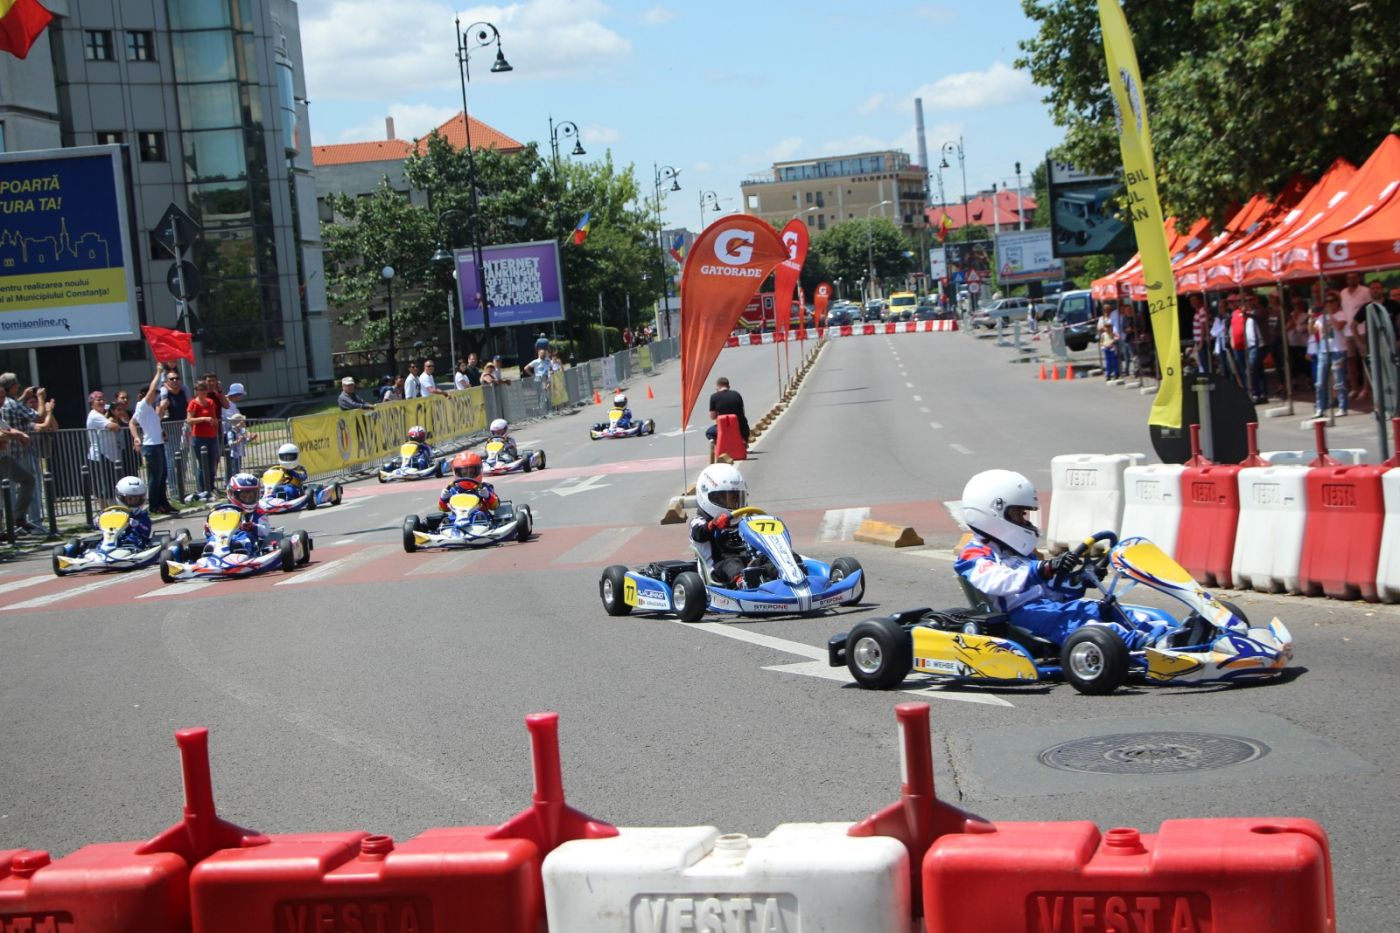 Circulația și parcarea în centrul Constanței, interzise din cauza unei competiții la care participă 34 de minori